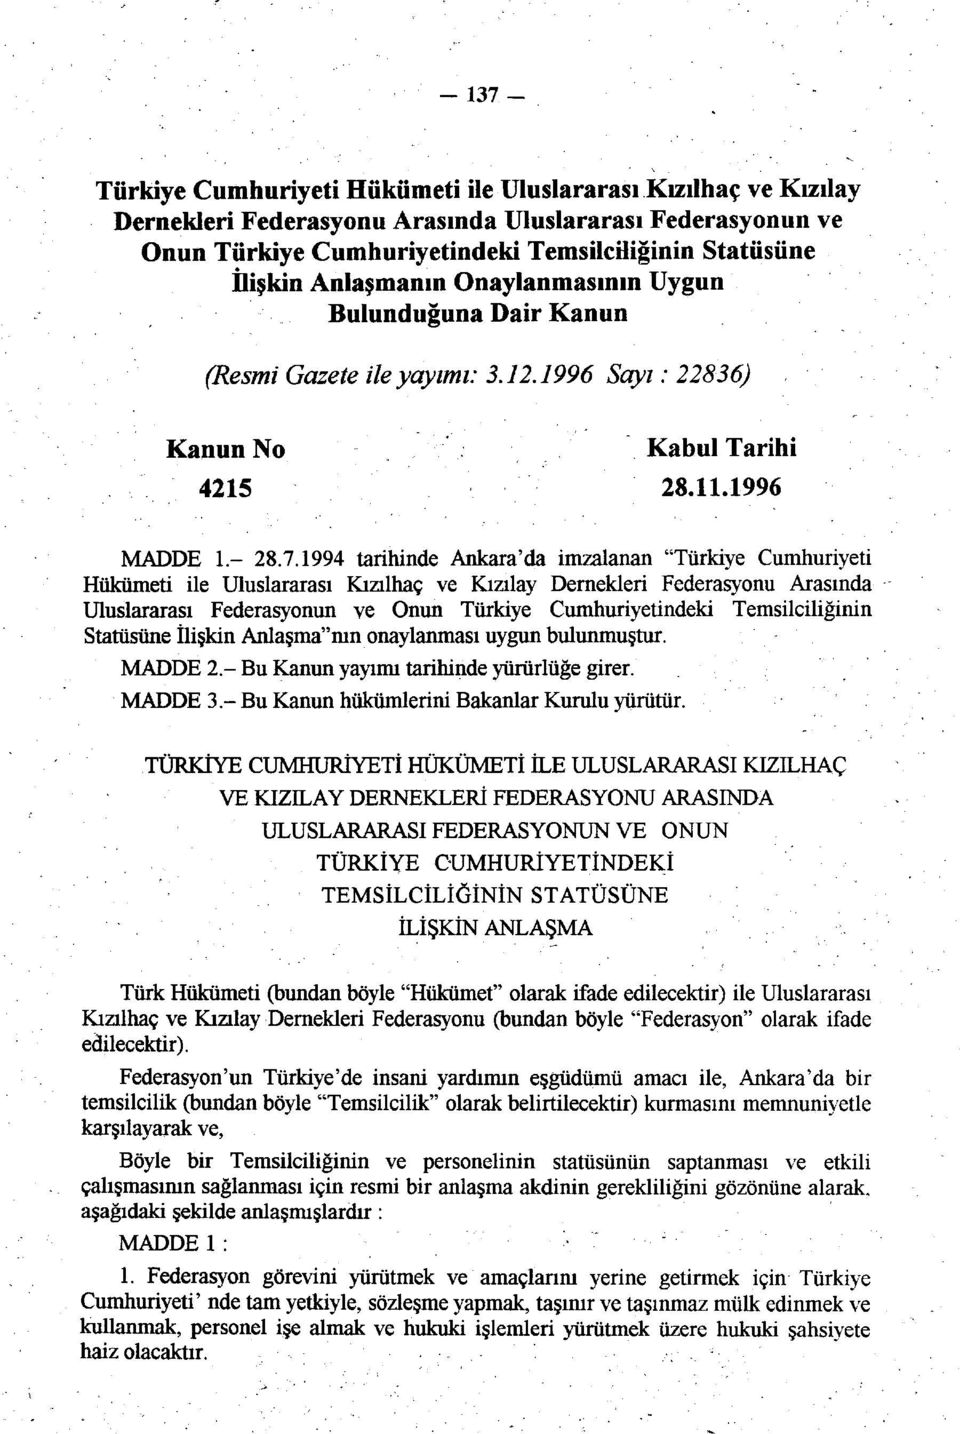 1994 tarihinde Ankara'da imzalanan "Türkiye Cumhuriyeti Hükümeti ile Uluslararası Kızılhaç ve Kızılay Dernekleri Federasyonu Arasında Uluslararası Federasyonun ve Onun Türkiye Cumhuriyetindeki